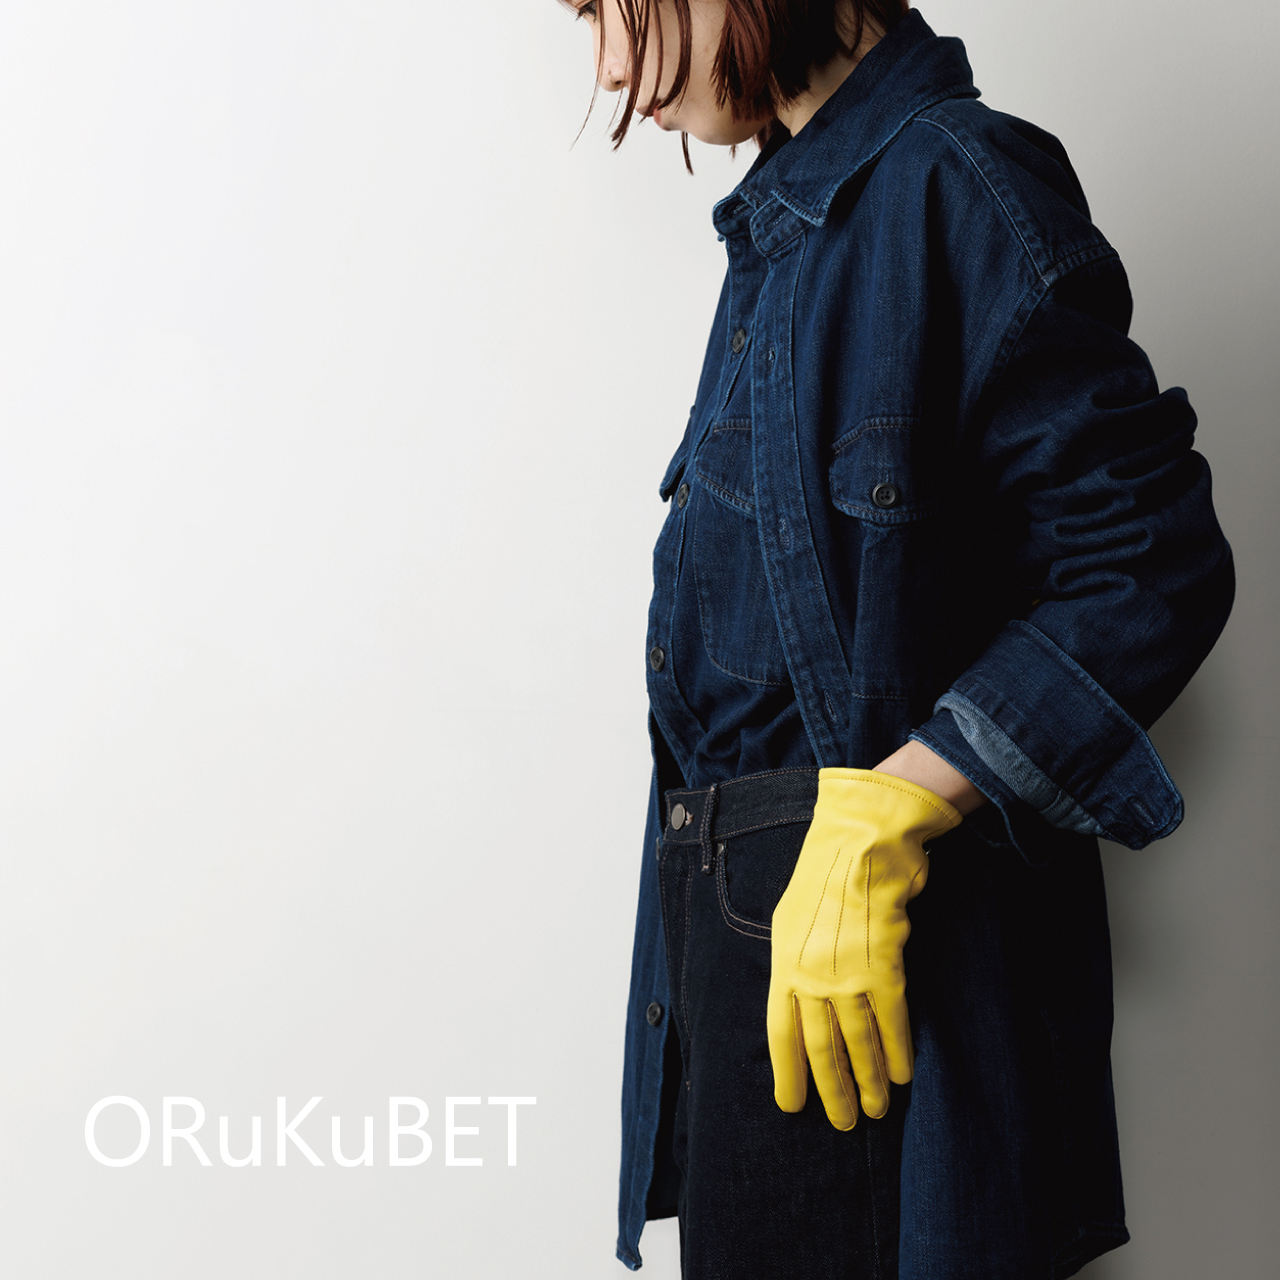 【手袋専門店 ORuKuBET】実店舗に関しまして